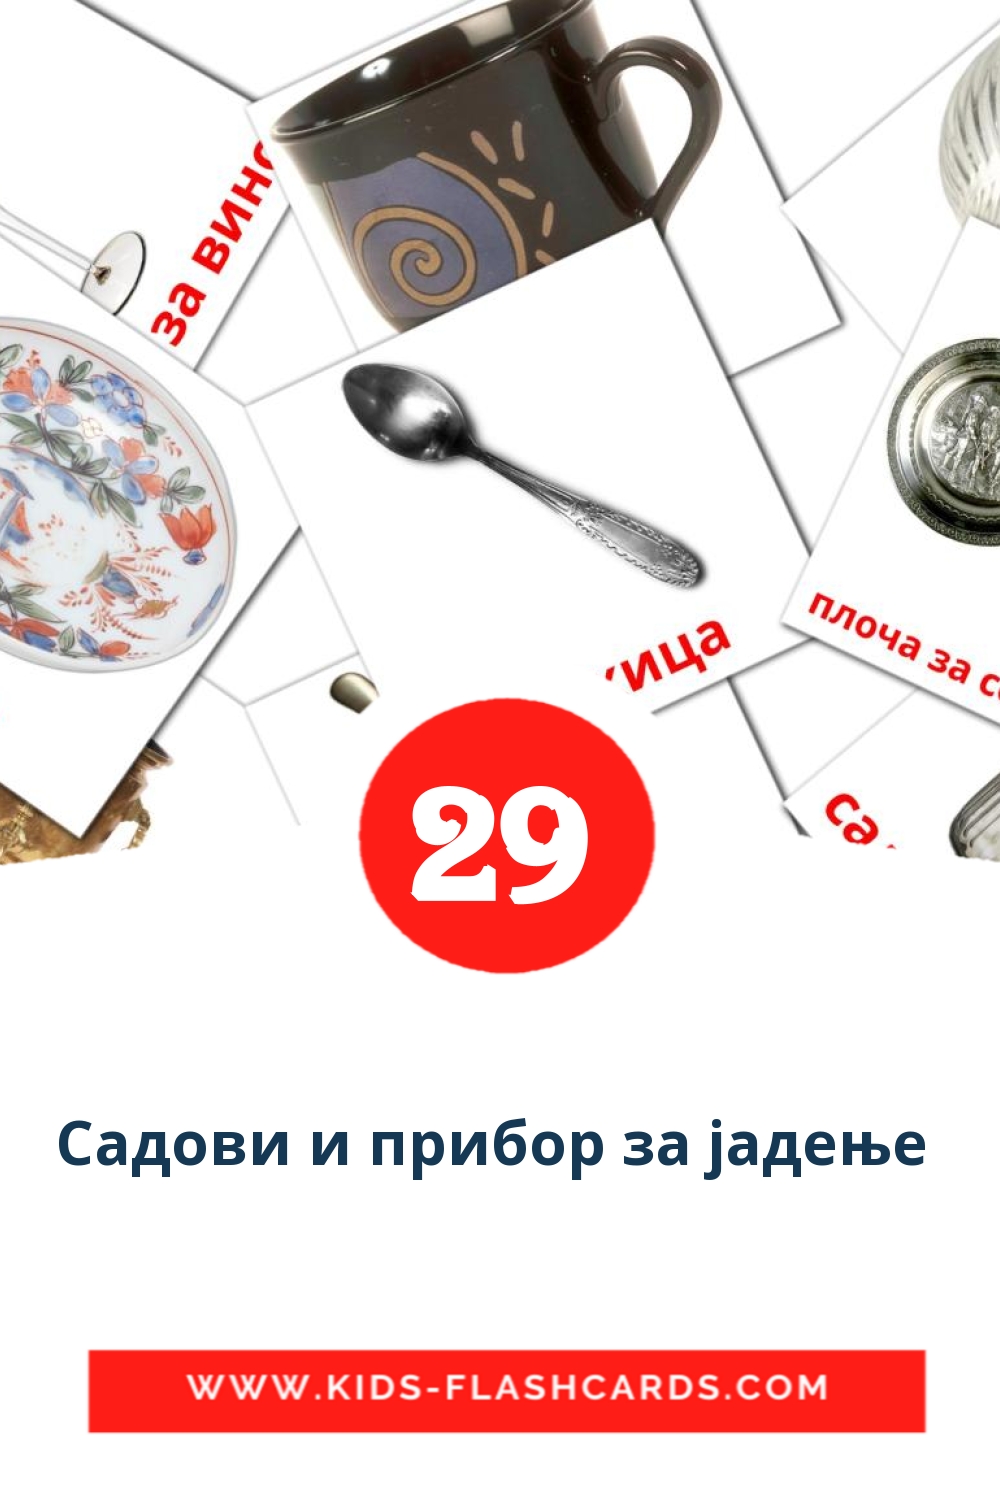 29 Cartões com Imagens de Садови и прибор за јадење  para Jardim de Infância em macedônia